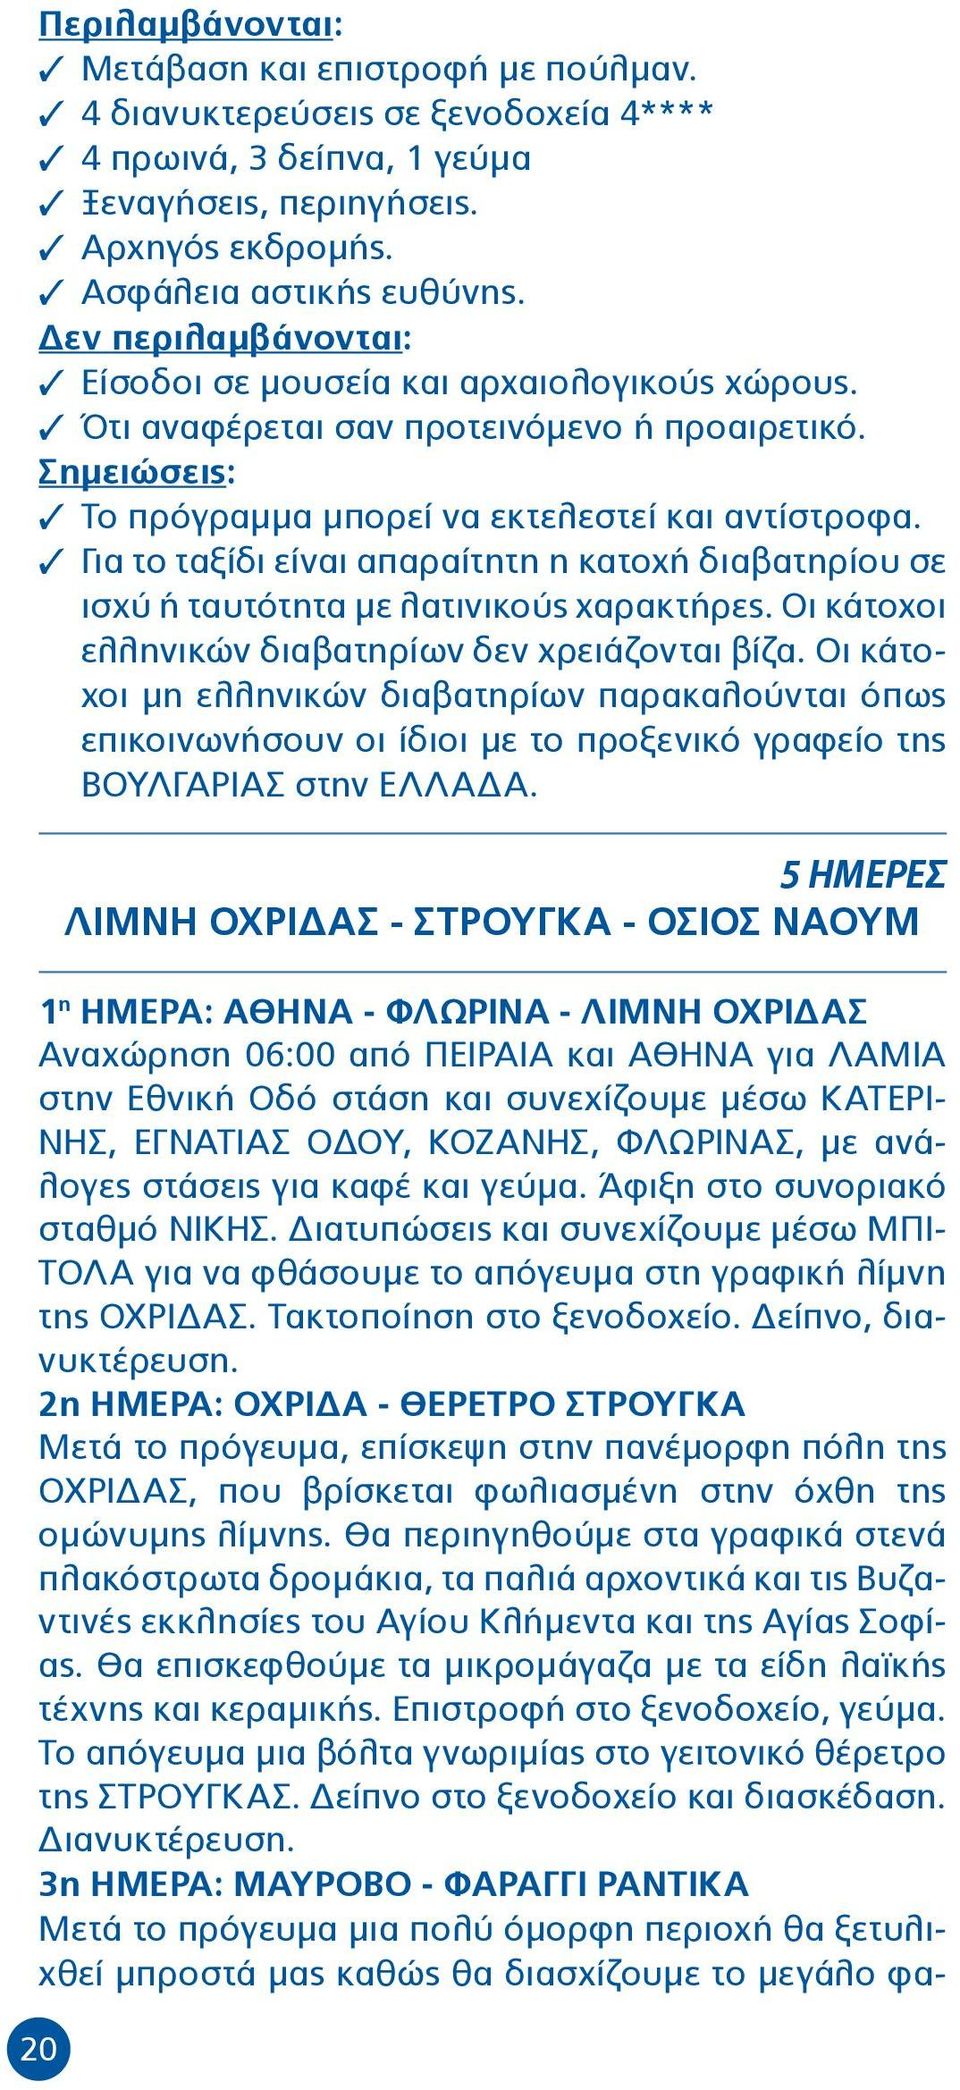 3 Για το ταξίδι είναι απαραίτητη η κατοχή διαβατηρίου σε ισχύ ή ταυτότητα με λατινικούς χαρακτήρες. Οι κάτοχοι ελληνικών διαβατηρίων δεν χρειάζονται βίζα.